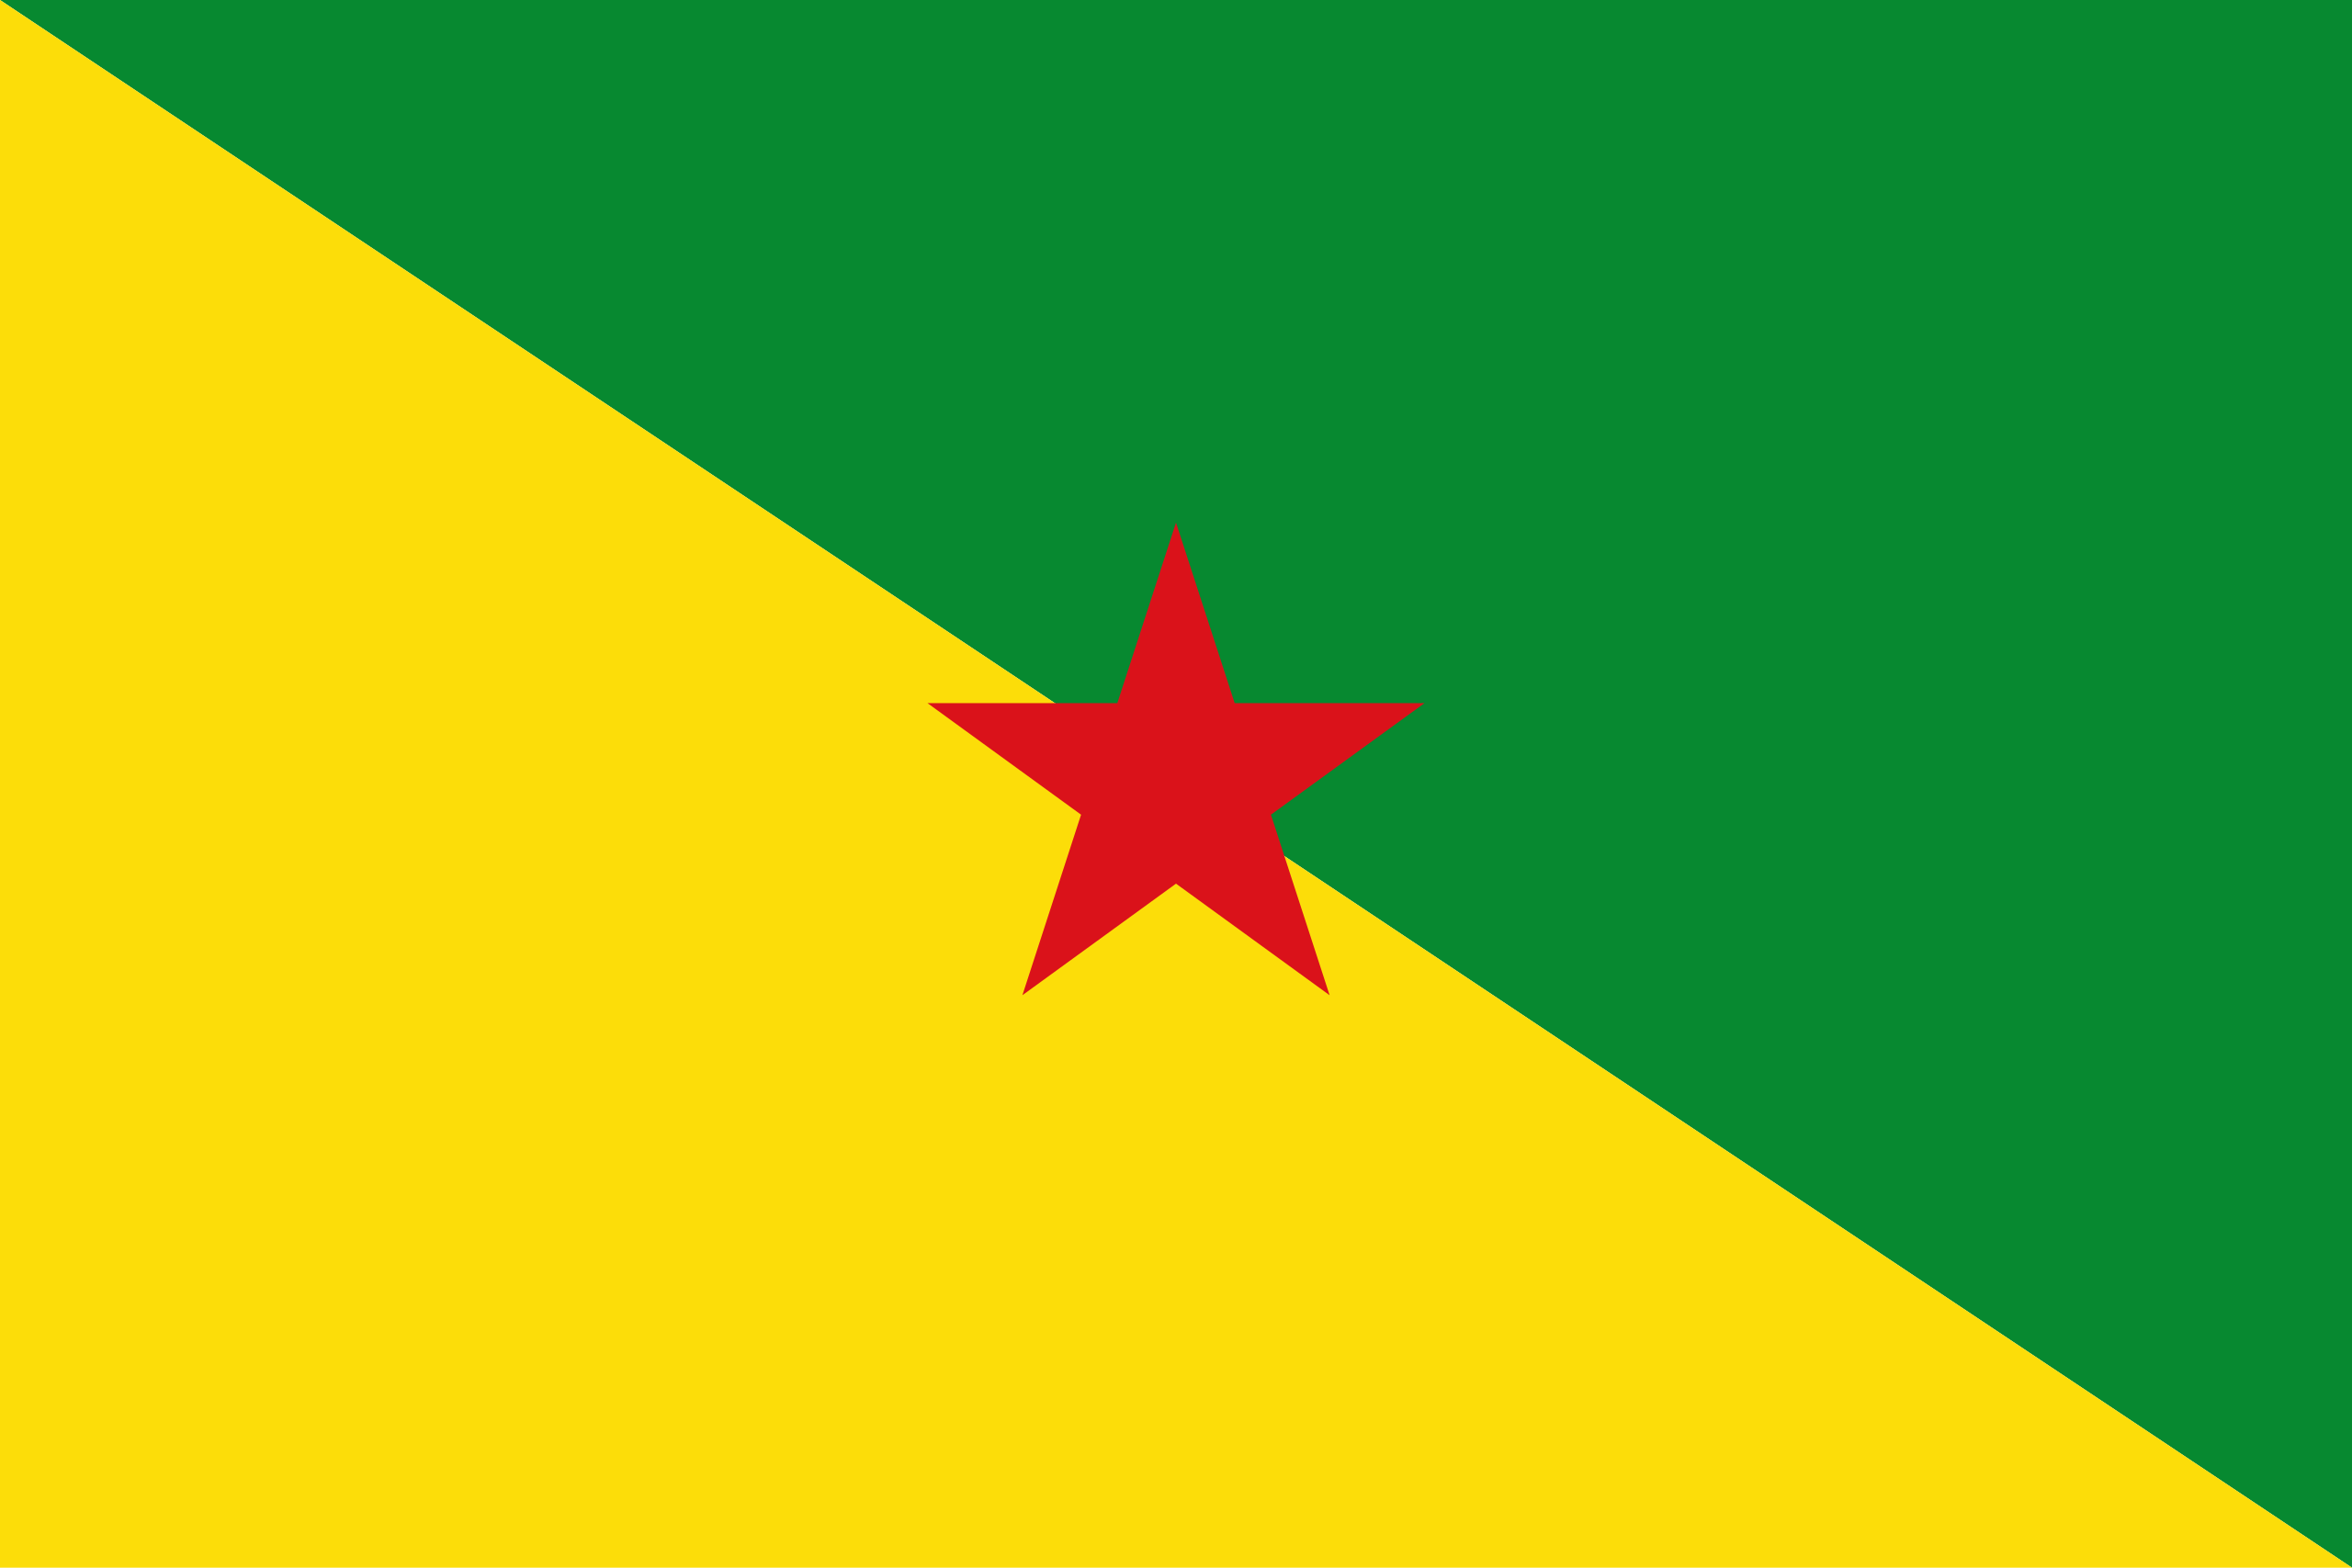 Guyane française (France)